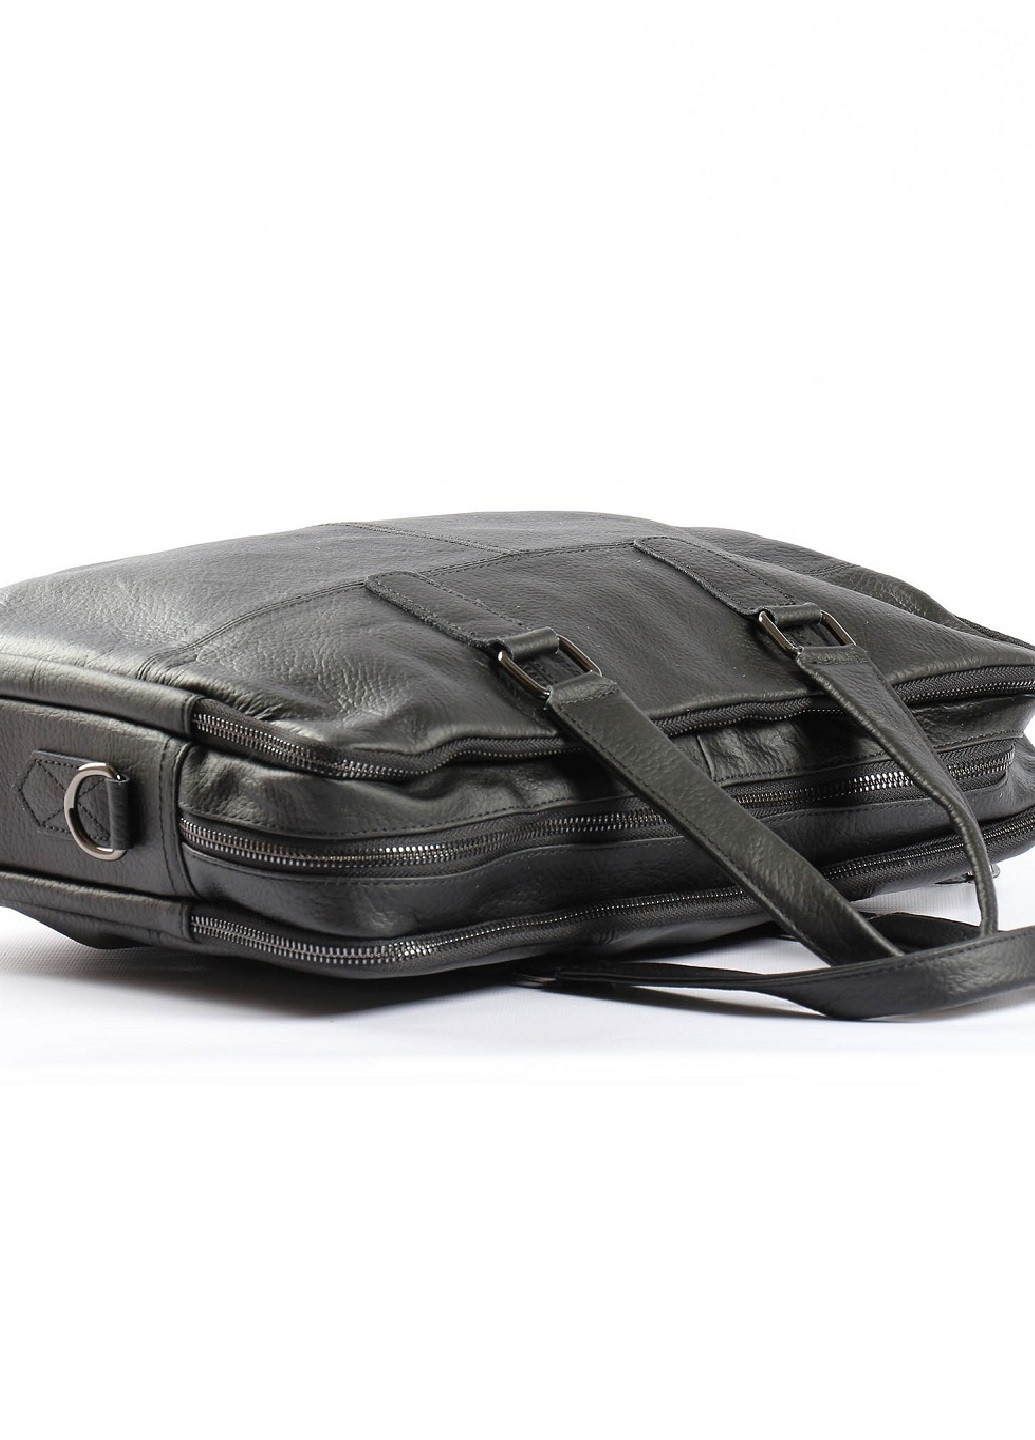 Кожаная сумка, портфель для ноутбука и документов Vishnya (257335084)